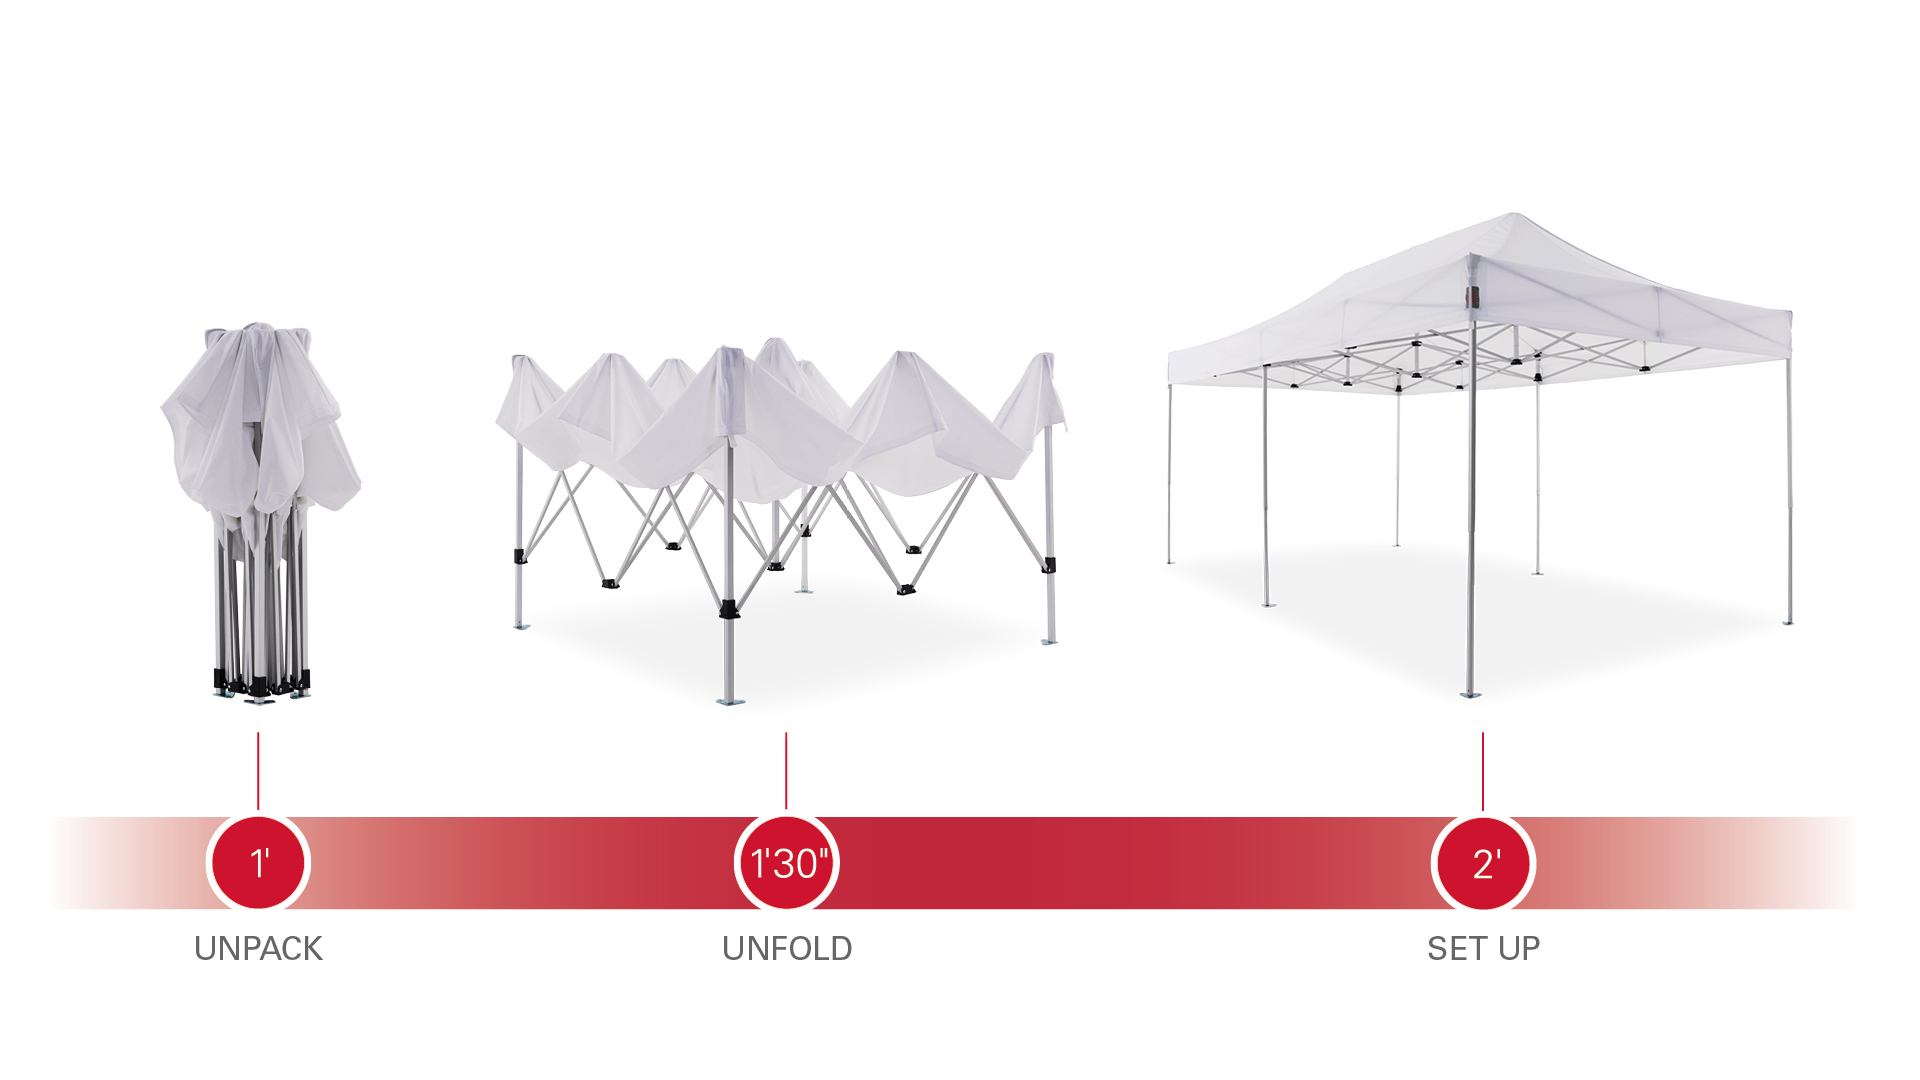 Aufbau eines 6x3m Faltpavillons: auspacken, auseinanderziehen, aufstellen